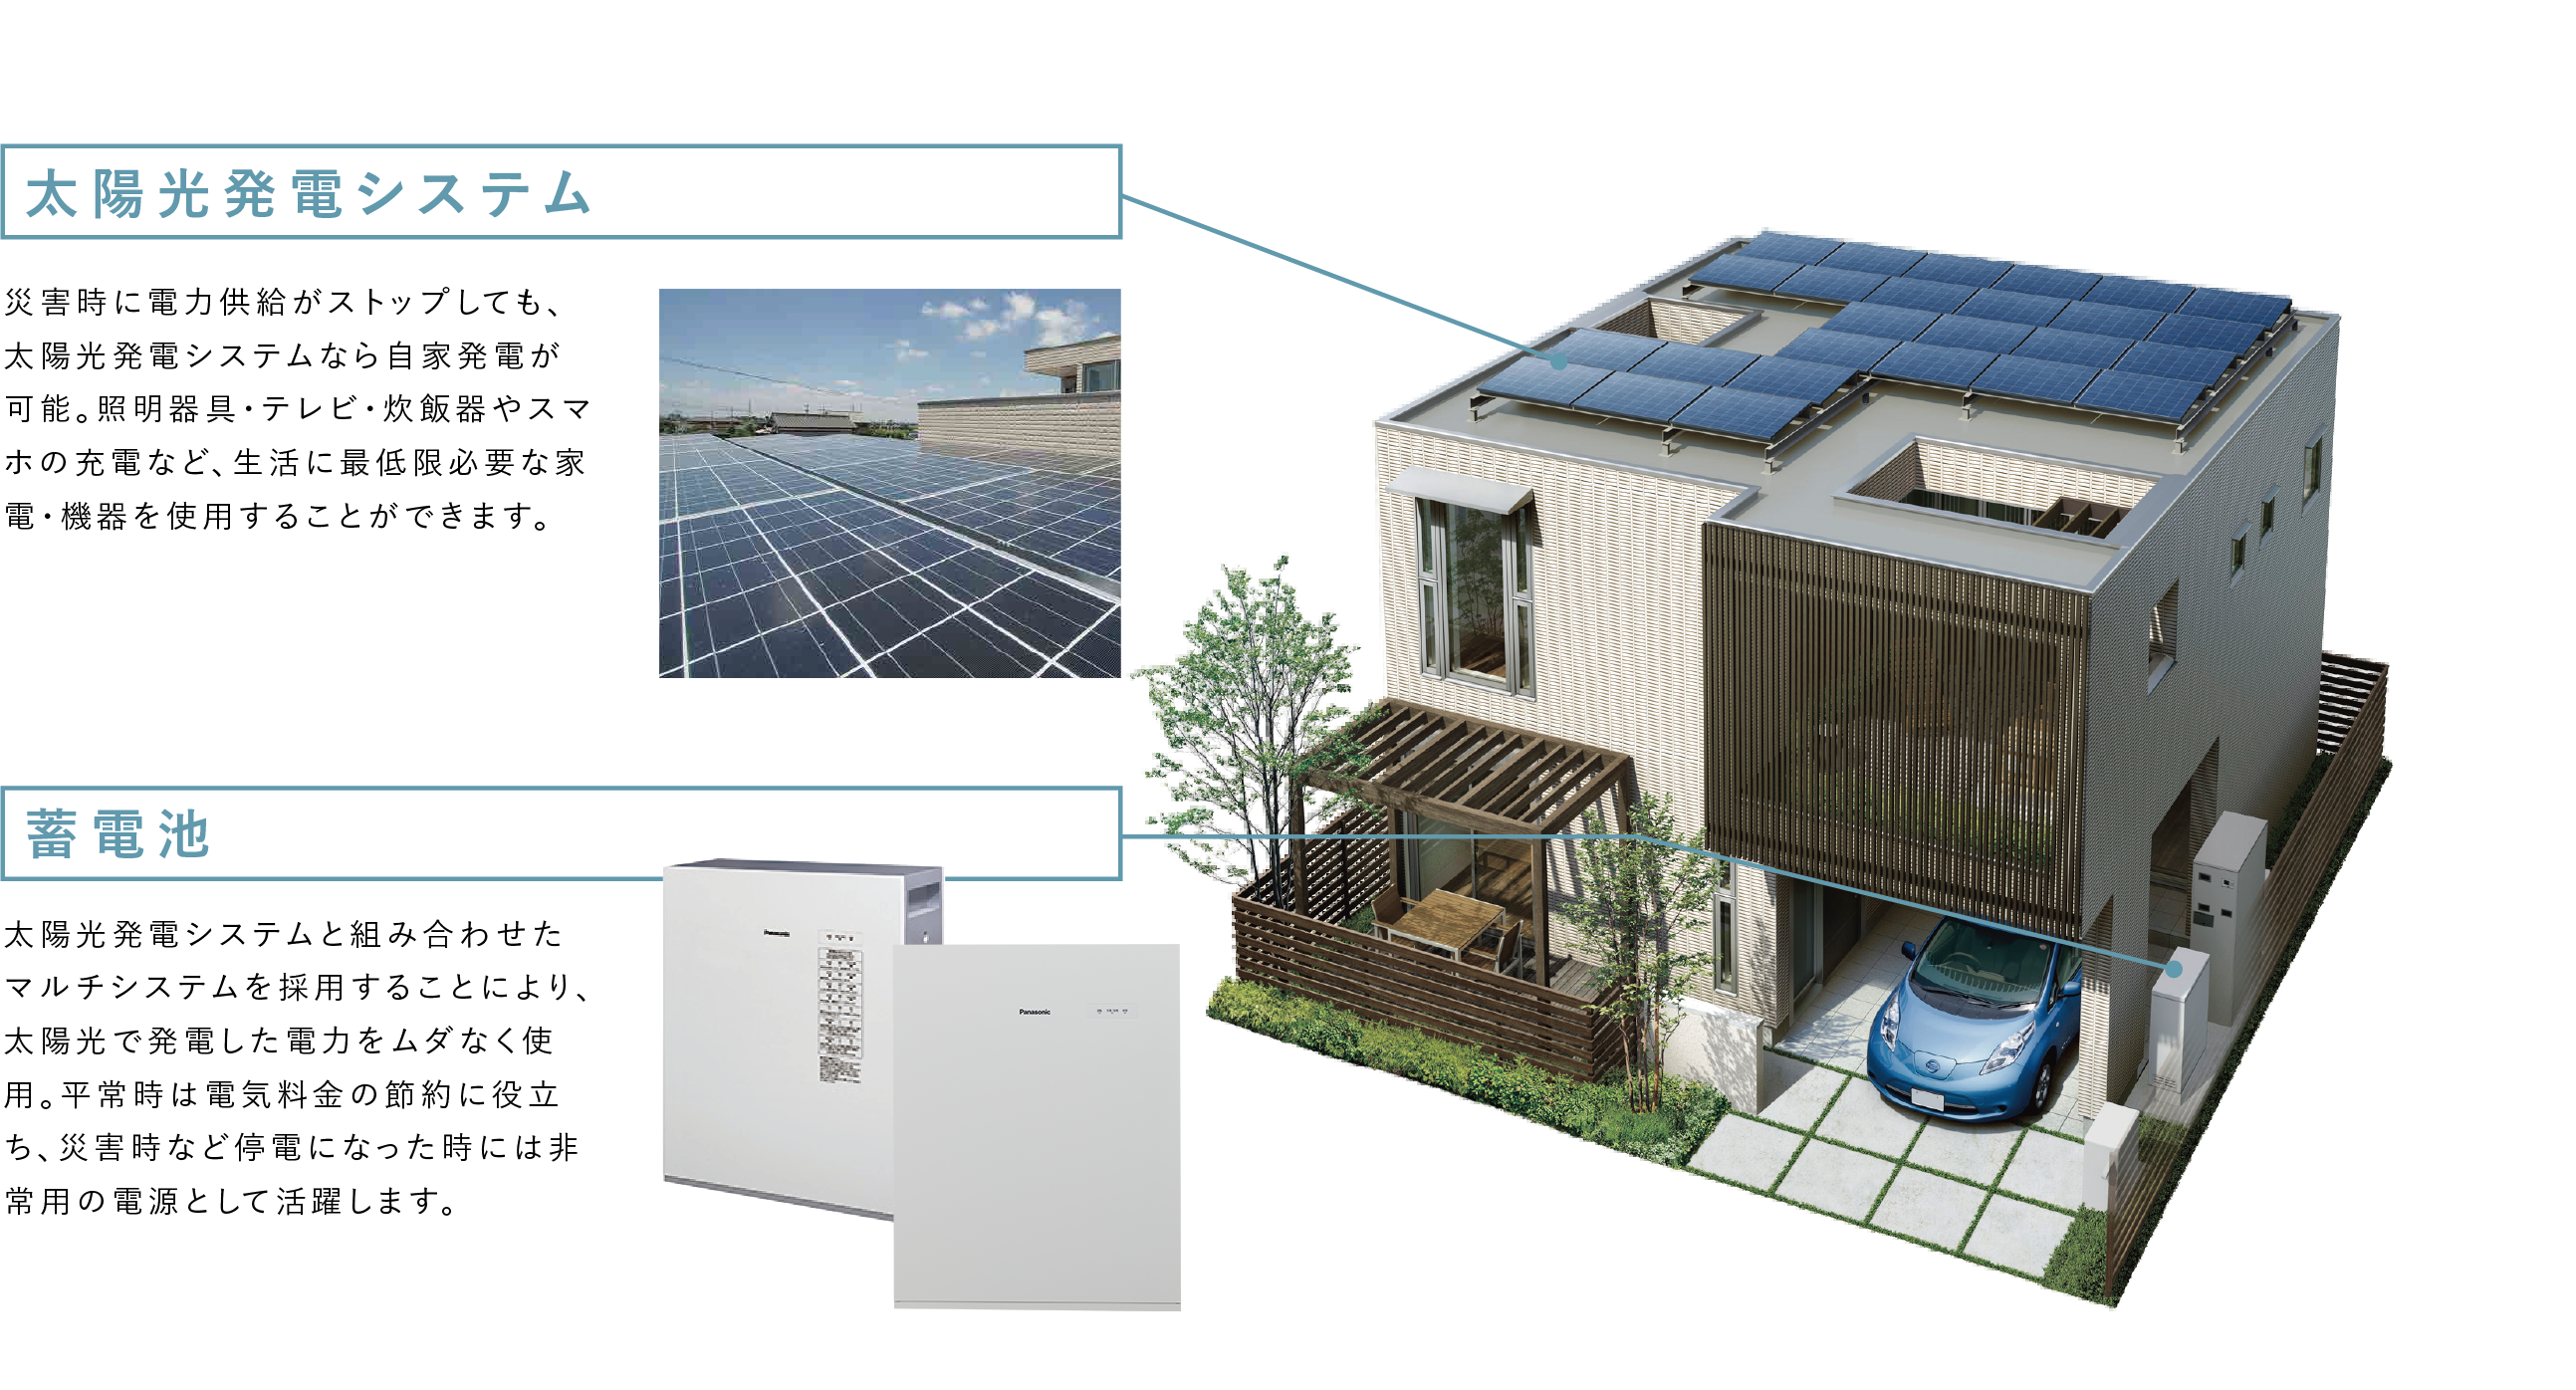 太陽光発電システム 災害時に電力供給がストップしても、太陽光発電システムなら自家発電が可能。照明器具・テレビ・炊飯器やスマホの充電など、生活に最低限必要な家電・機器を使用することができます。　蓄電池 太陽光発電システムと組み合わせたマルチシステムを採用することにより、太陽光で発電した電力をムダなく使用。平常時は電気料金の節約に役立ち、災害時など停電になった時には非常用の電源として活躍します。